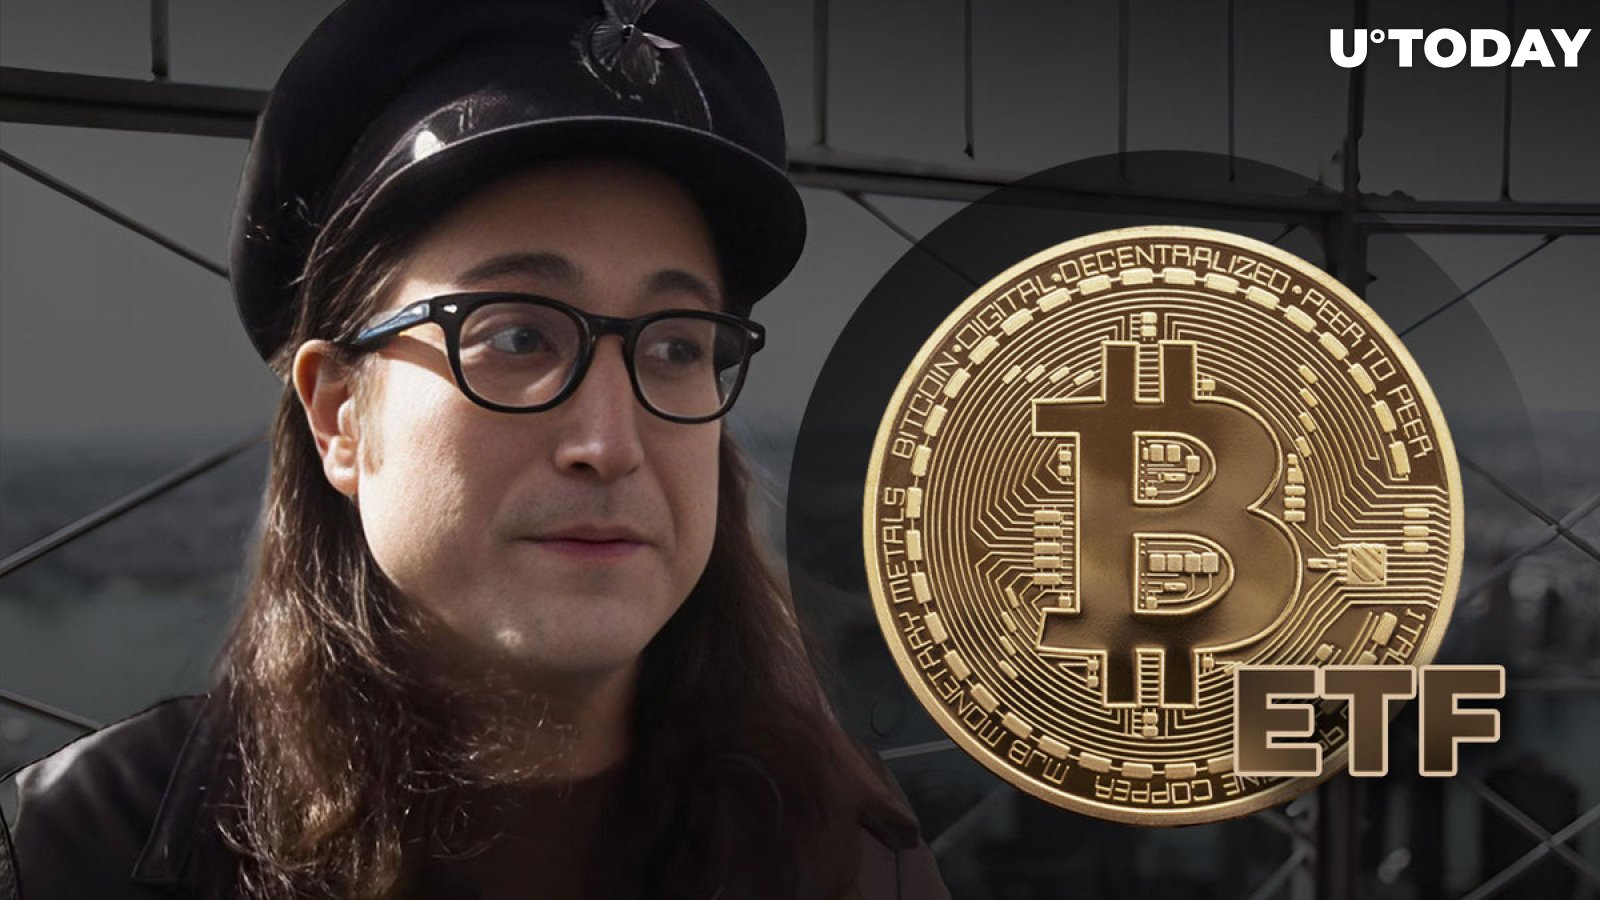 John Lennon's Son Issues Victorious Bitcoin ETF Tweet